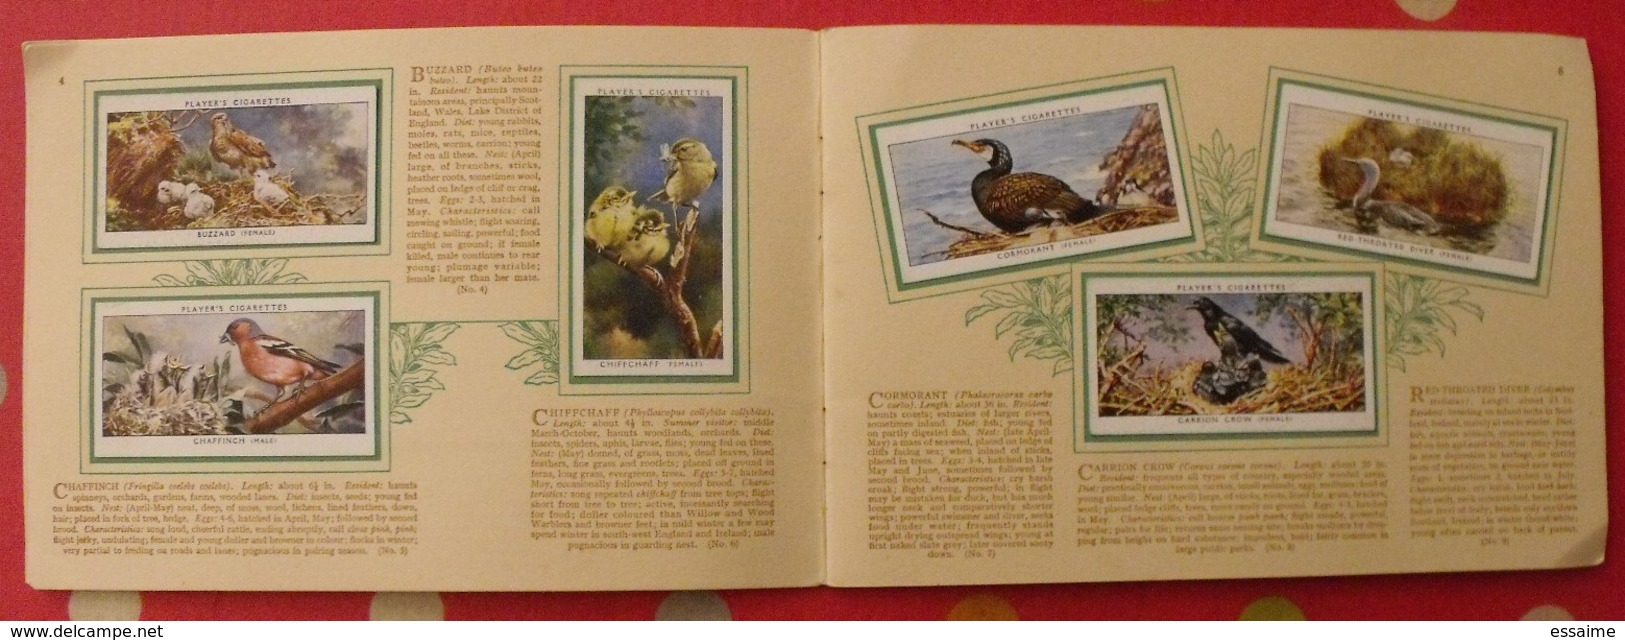 Album D'images Cigarette Pictures Card John Player. En Anglais. Birds & Young, Oiseaux & Petits. 1935. 50 Chromo - Albums & Katalogus